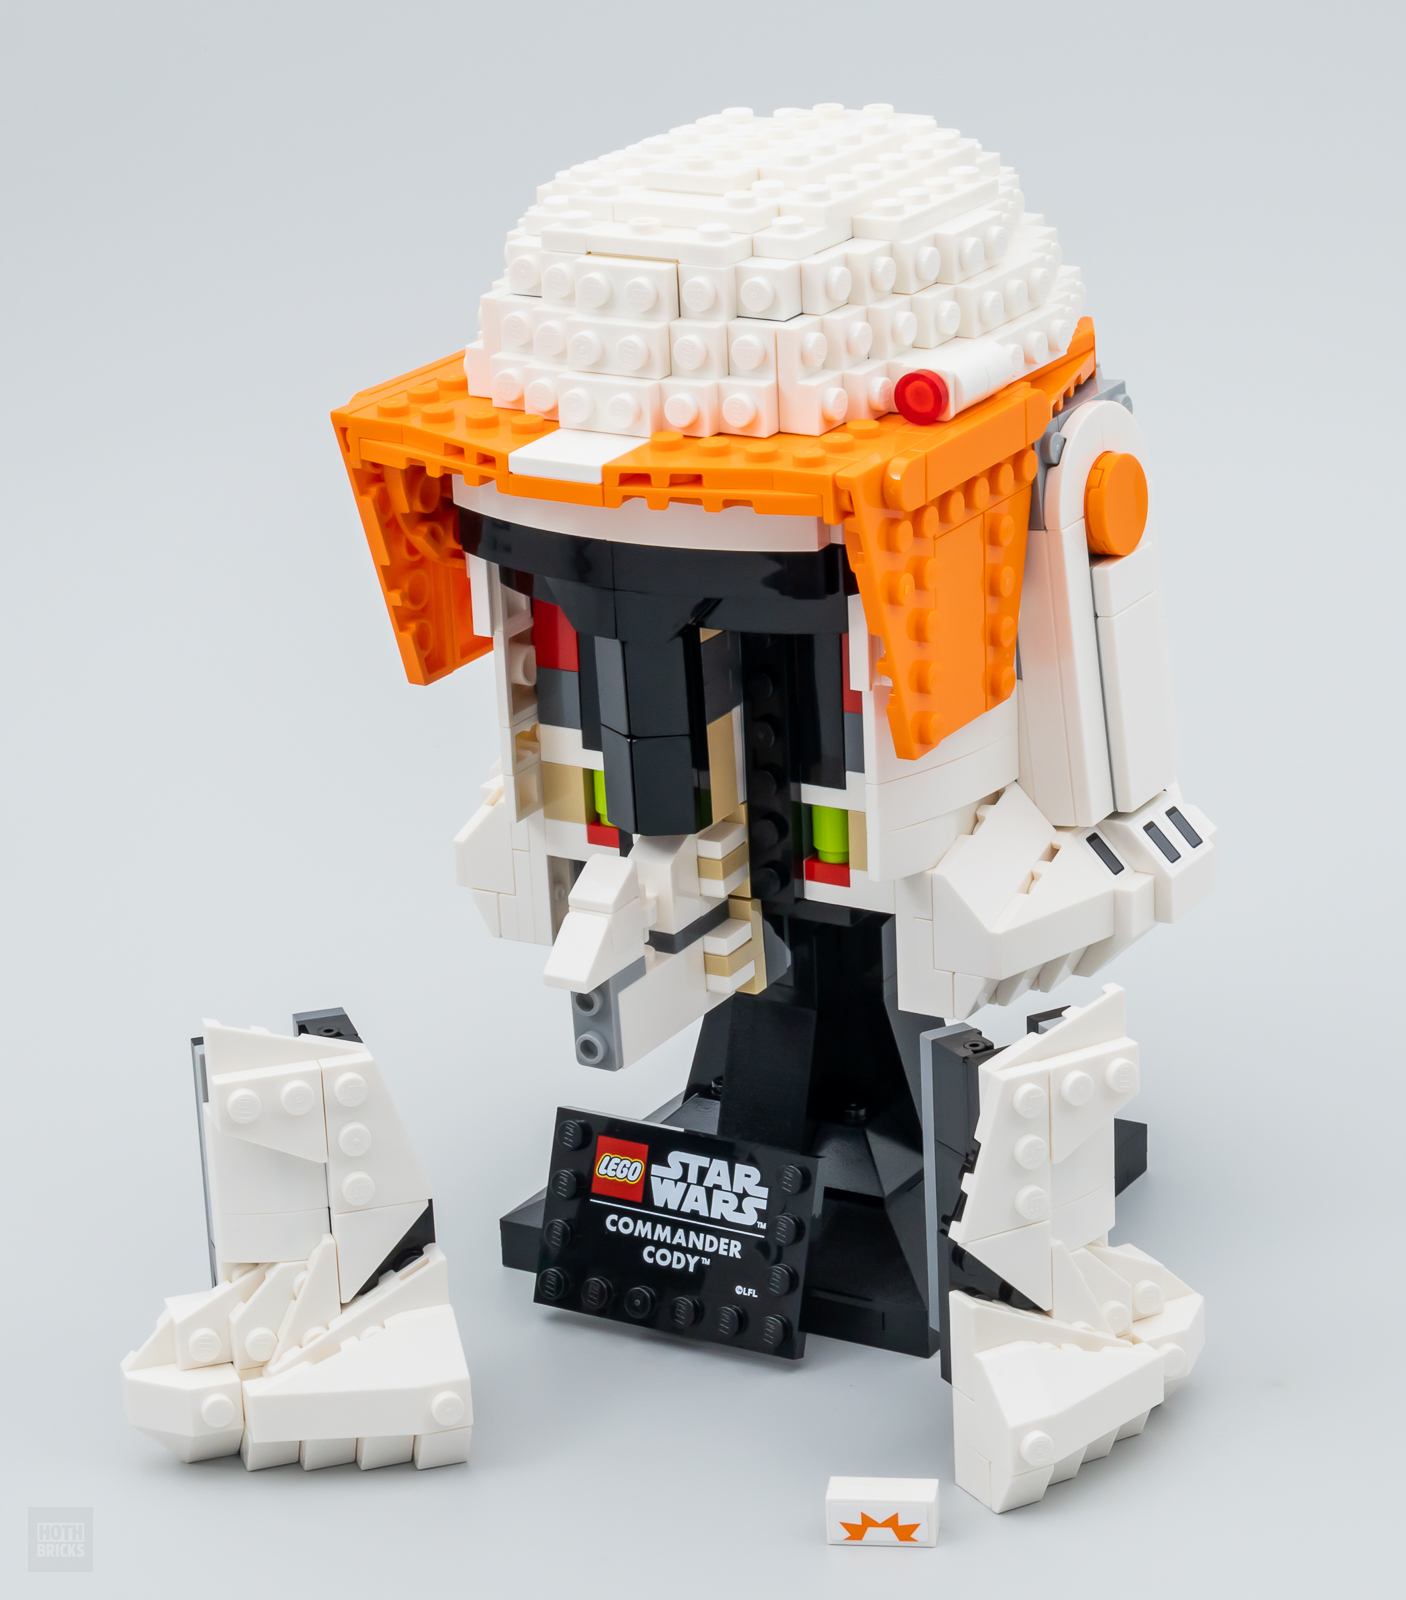 Lego Star Wars - Le casque du Commandant clone (75350)